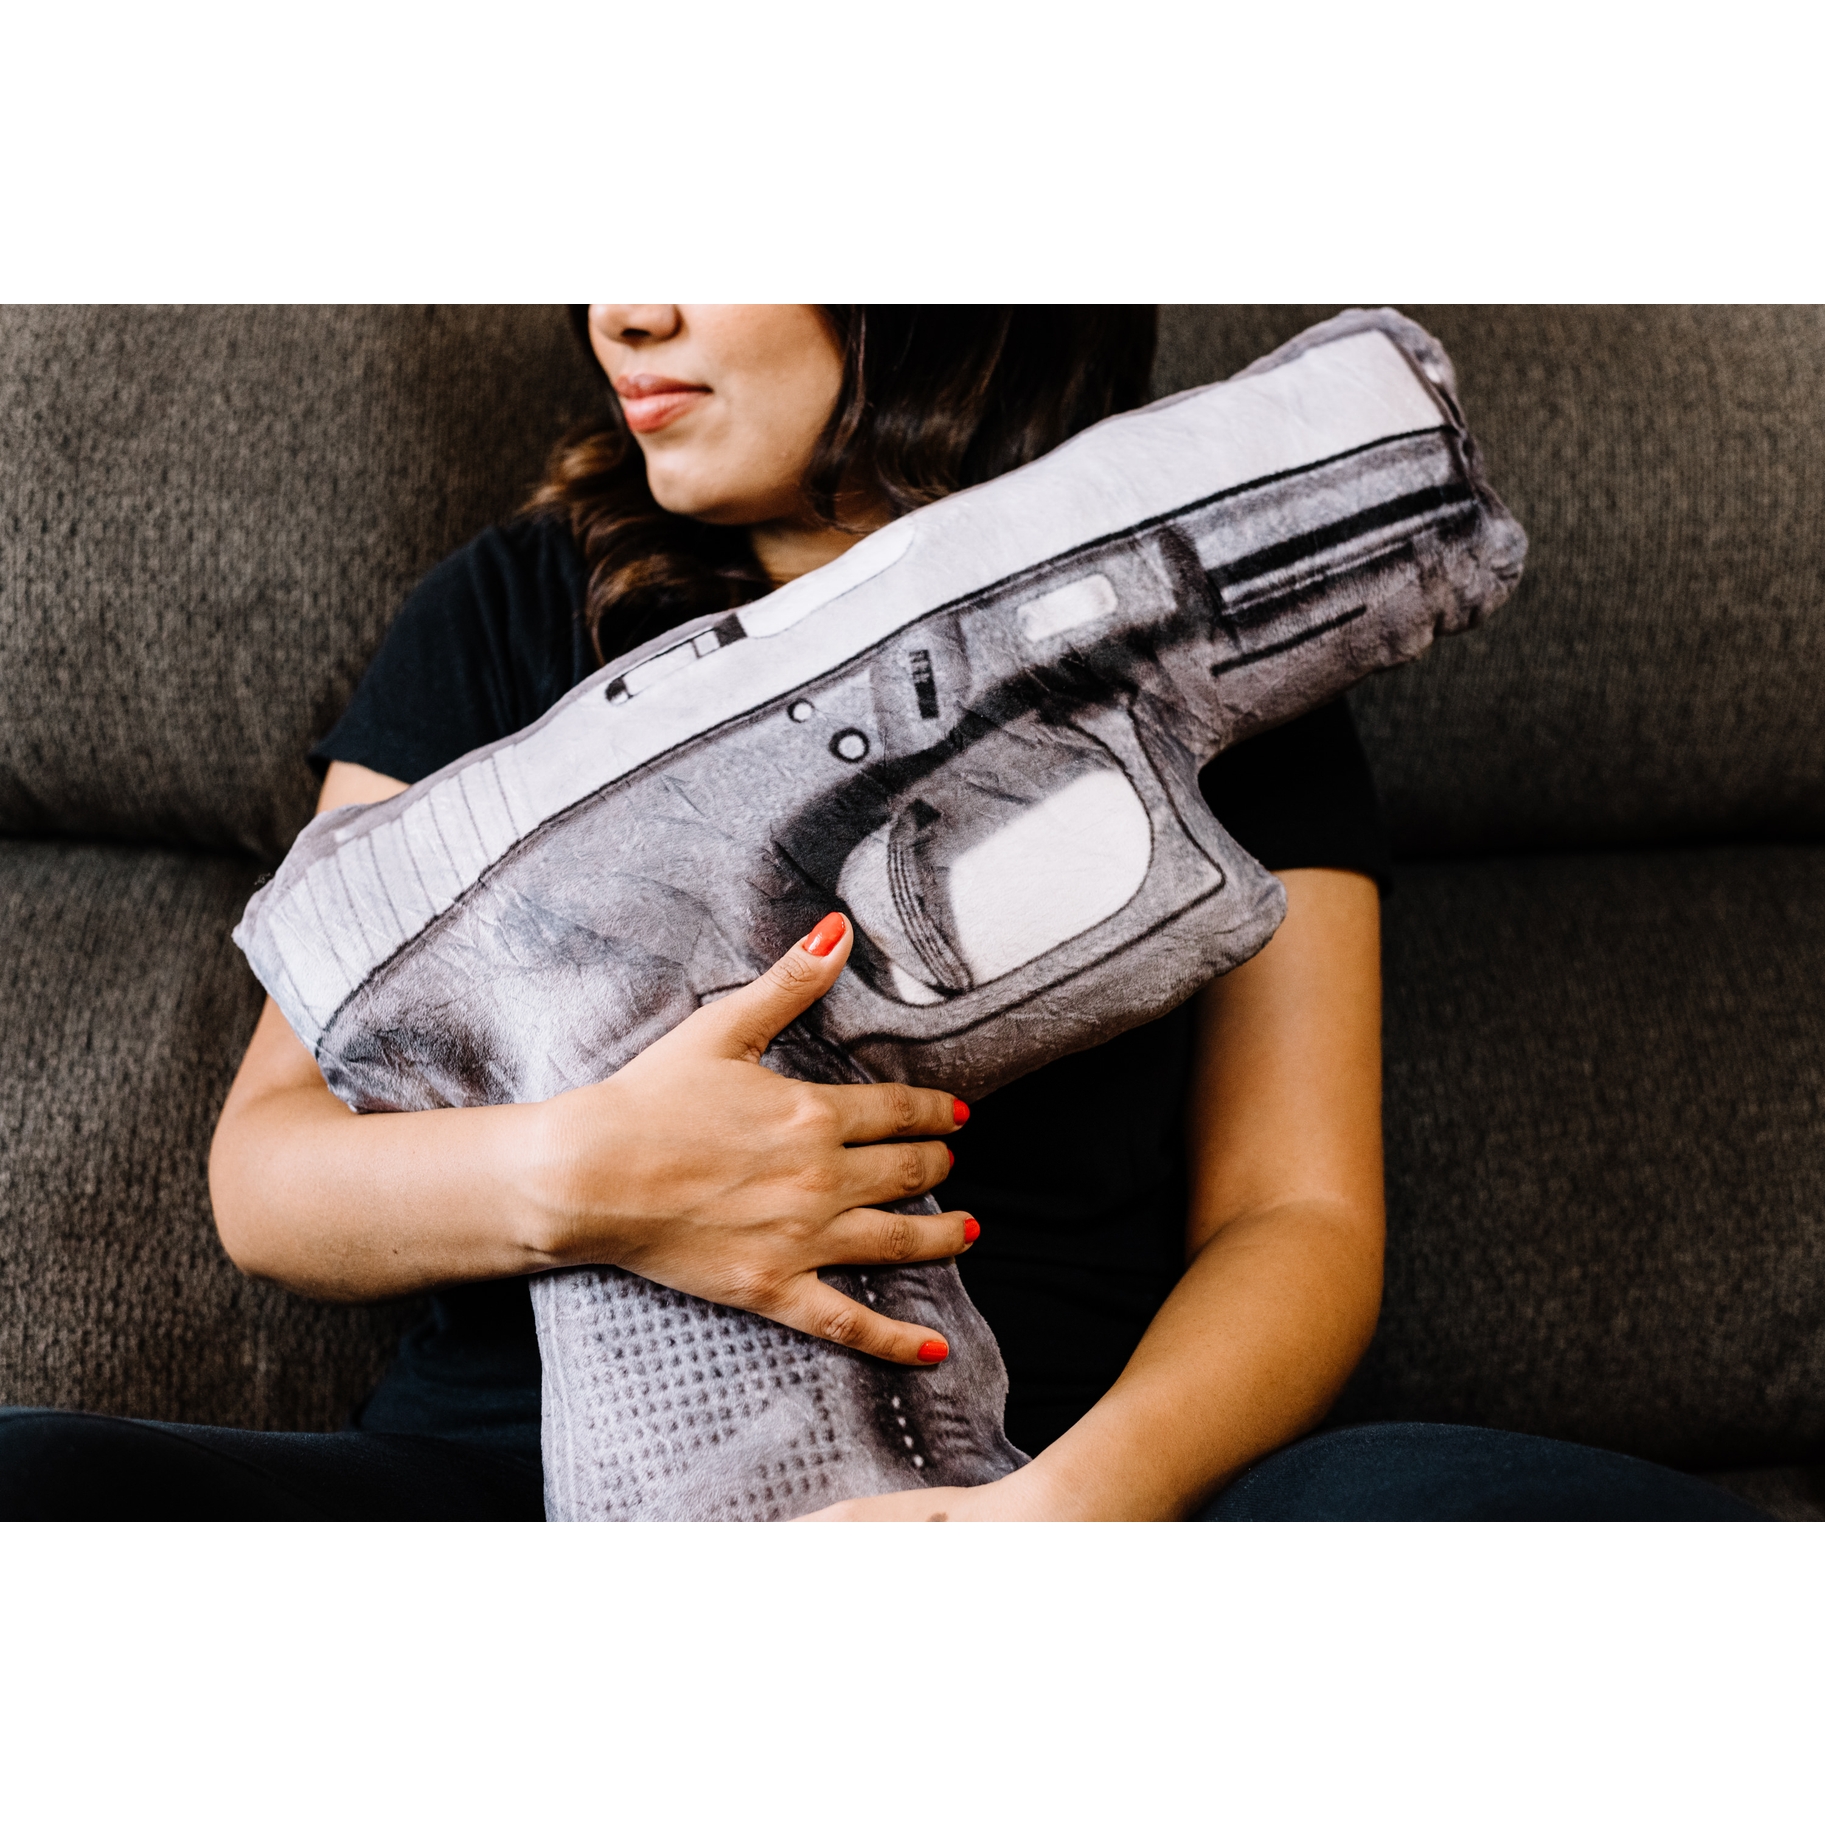 Caliber Gourmet - Automatic Handgun Pillow